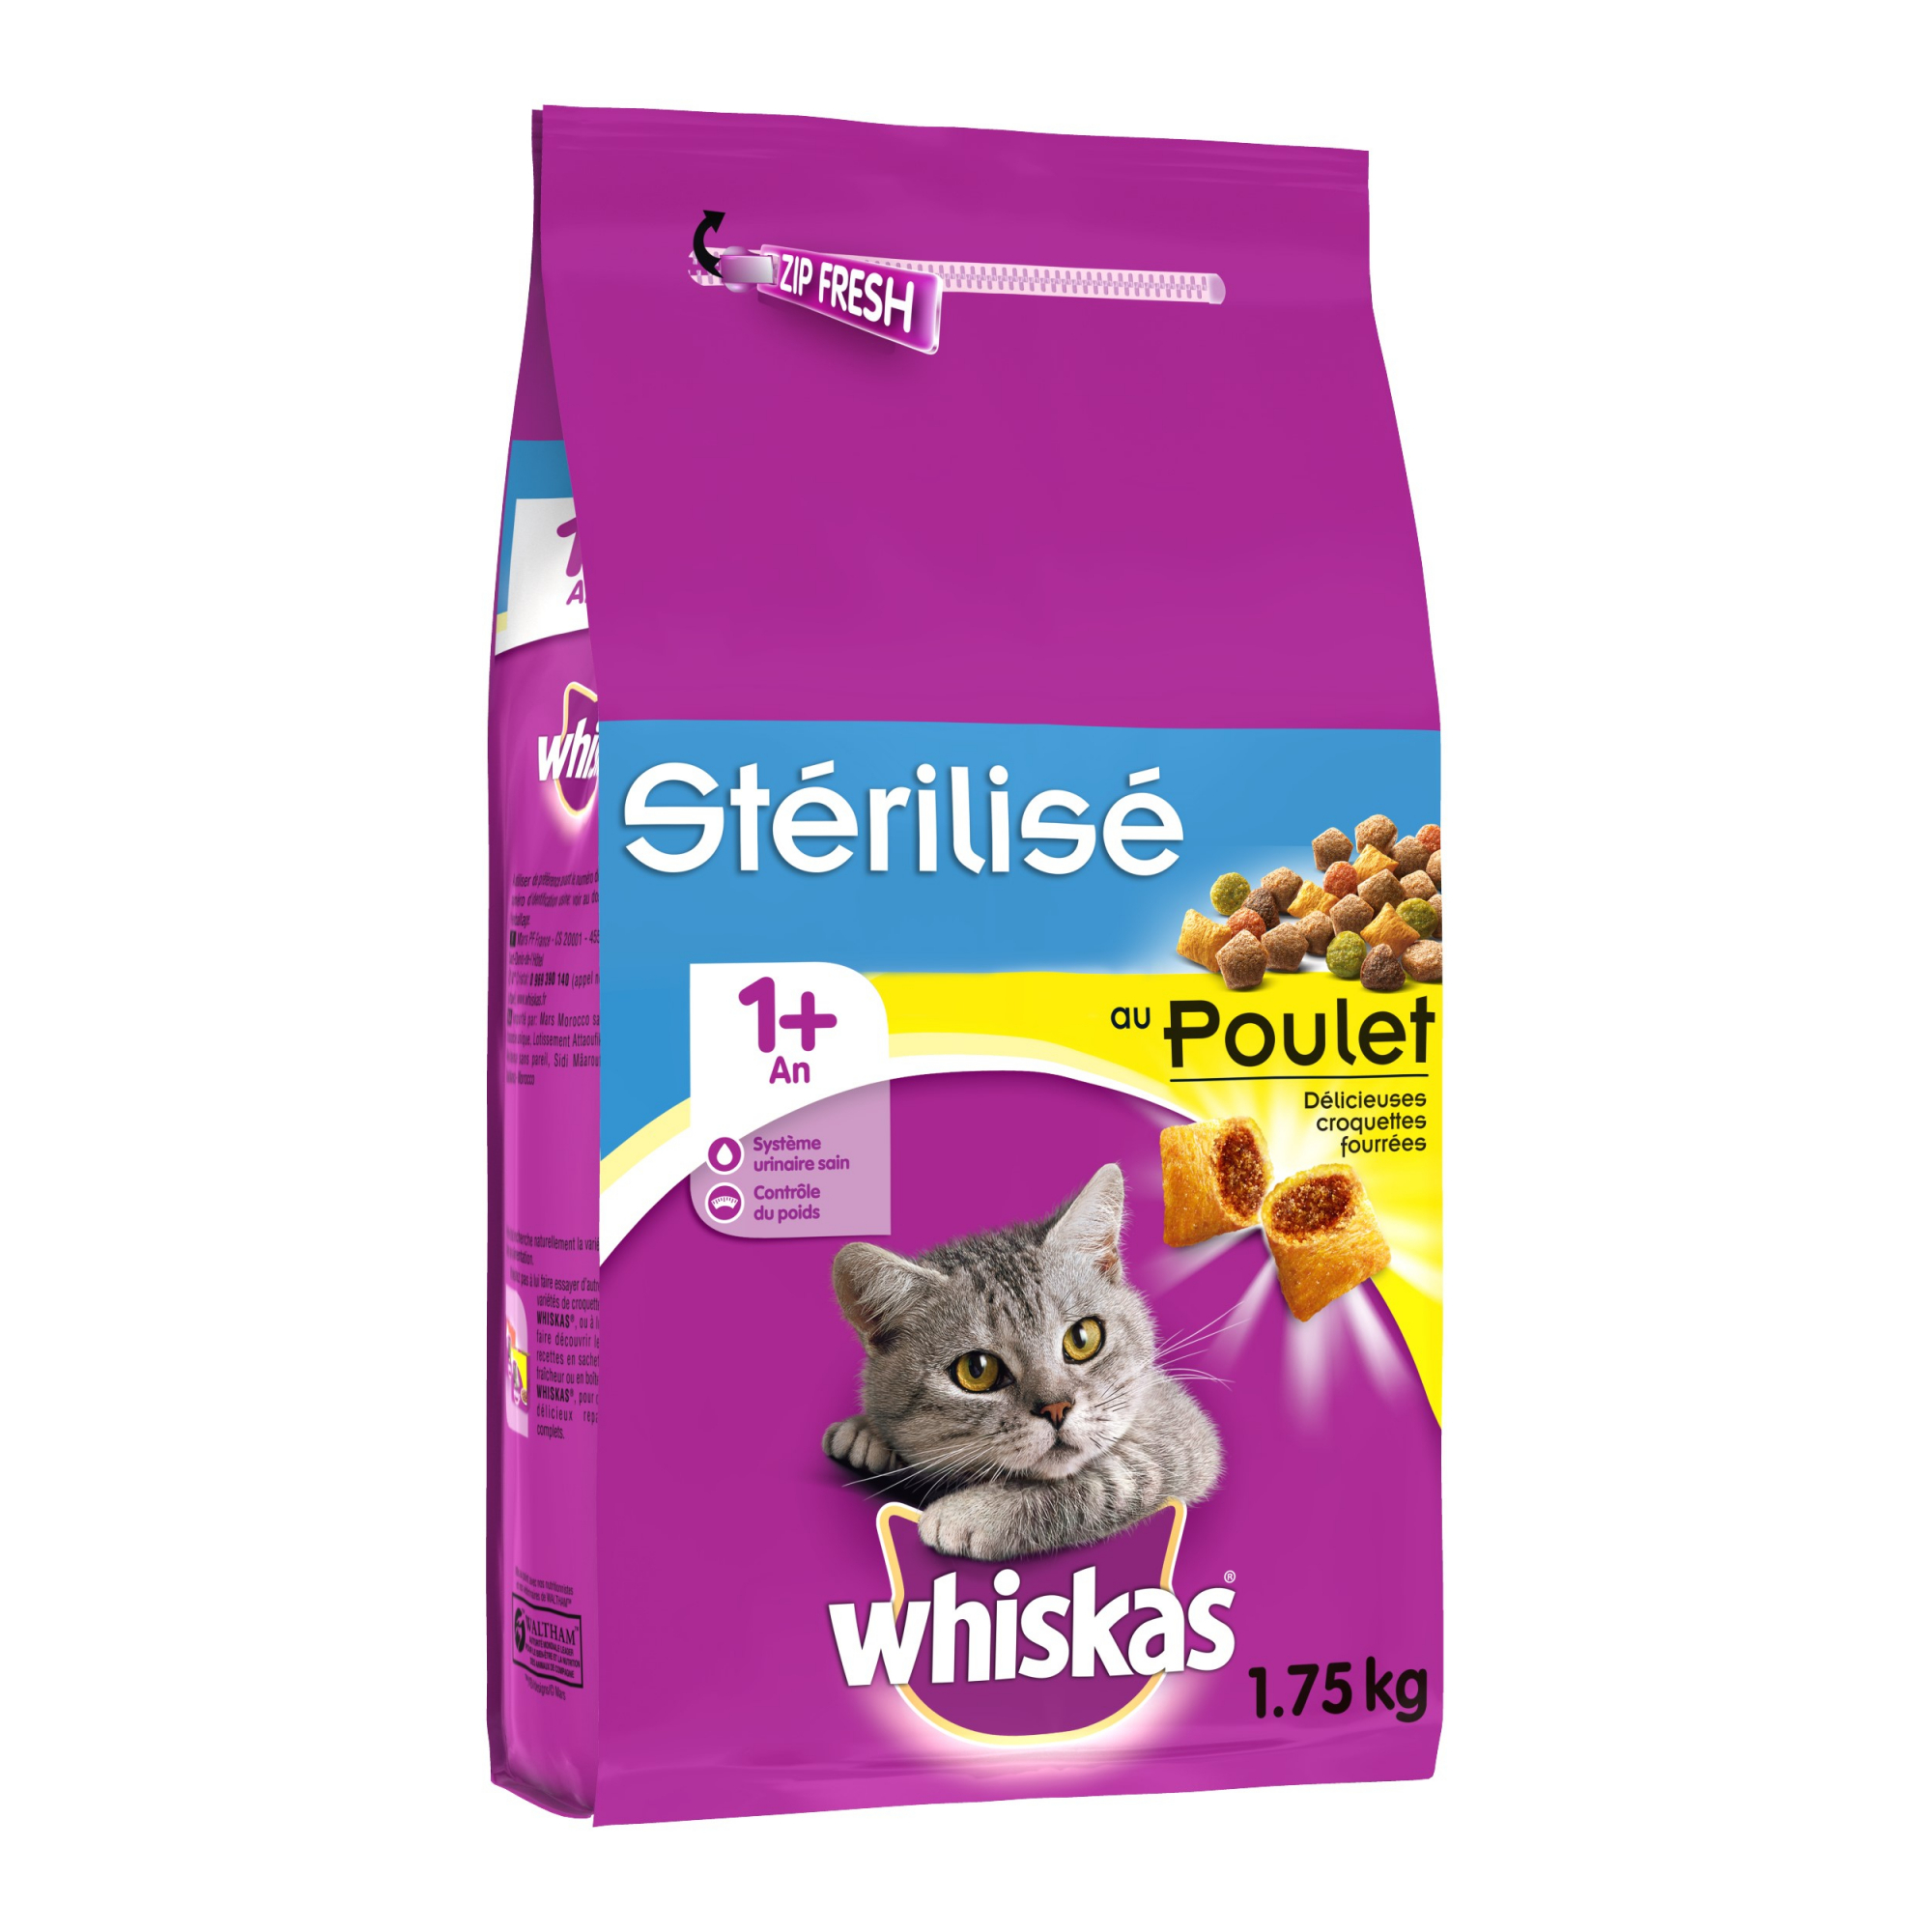 Whiskas 1+ Adult für sterilisierte Katzen 1+ Huhn oder Lachs